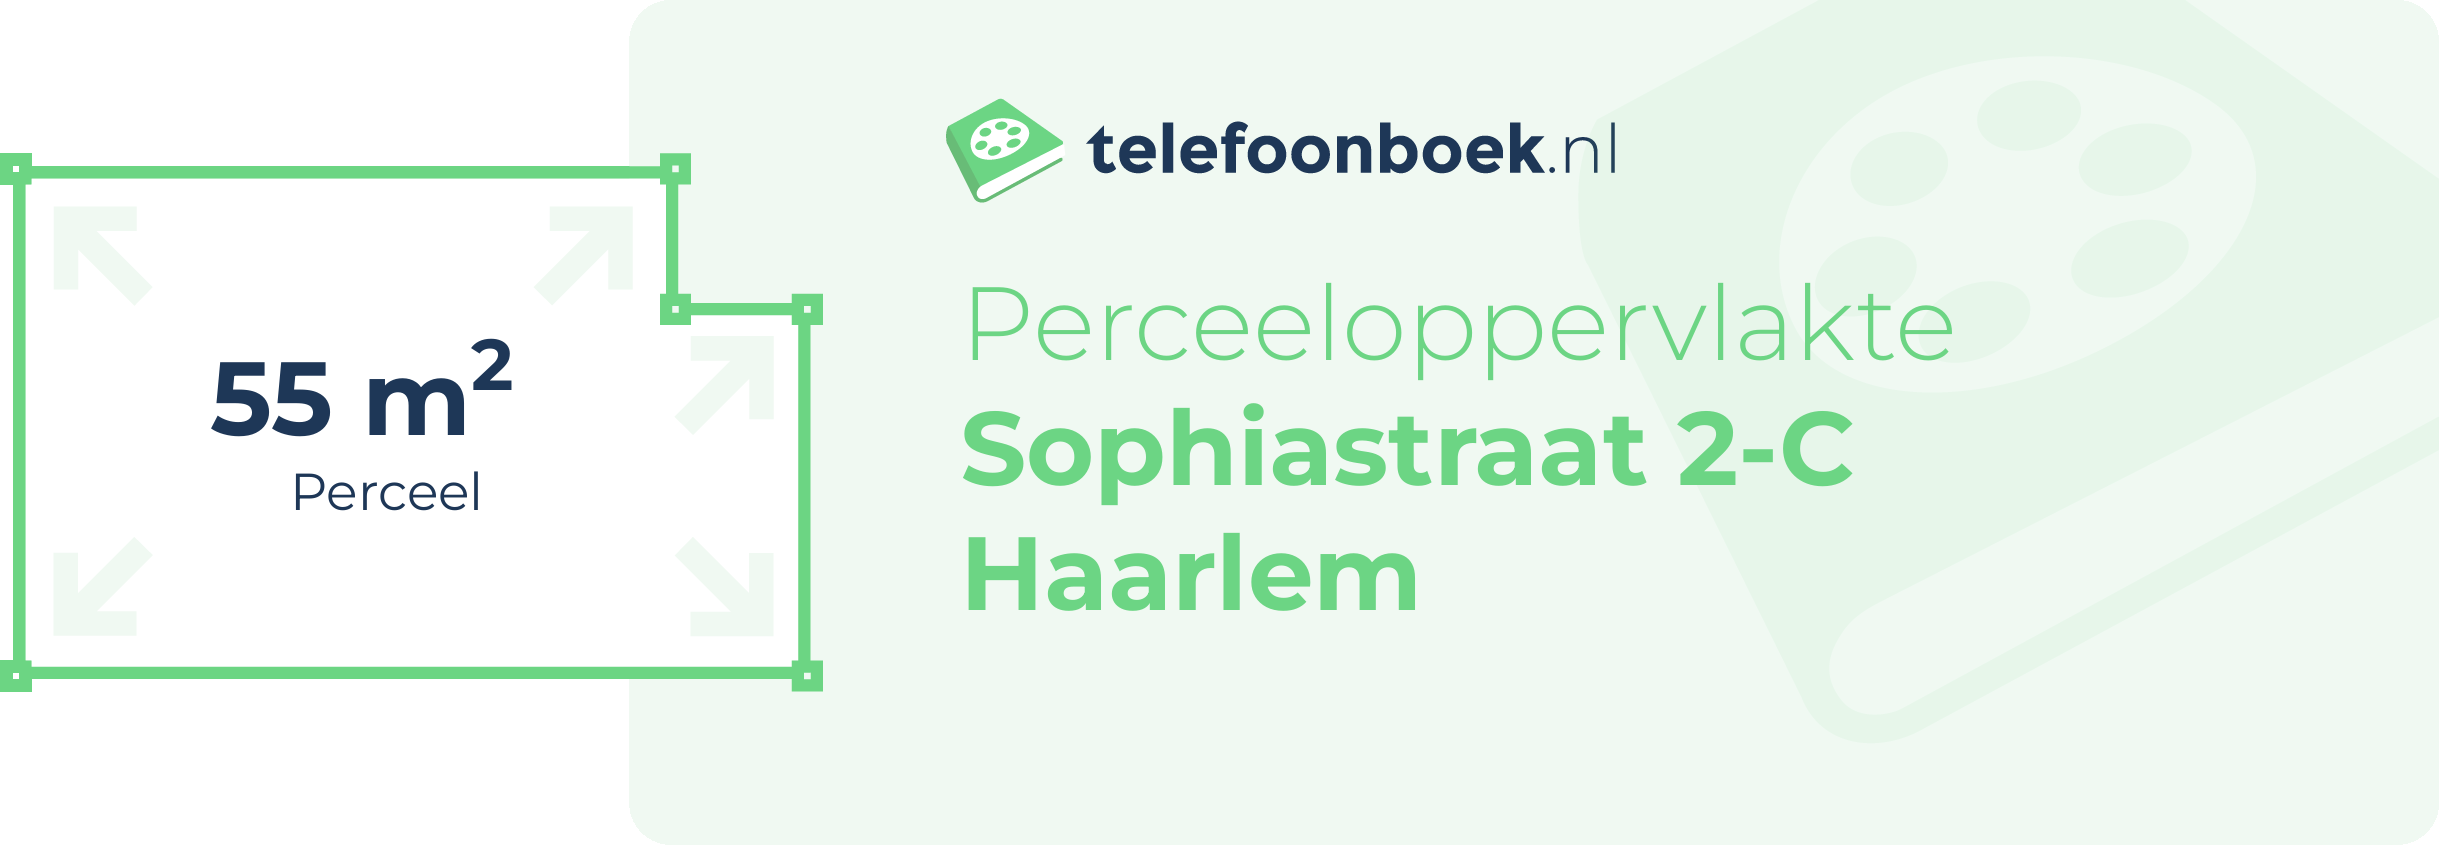 Perceeloppervlakte Sophiastraat 2-C Haarlem